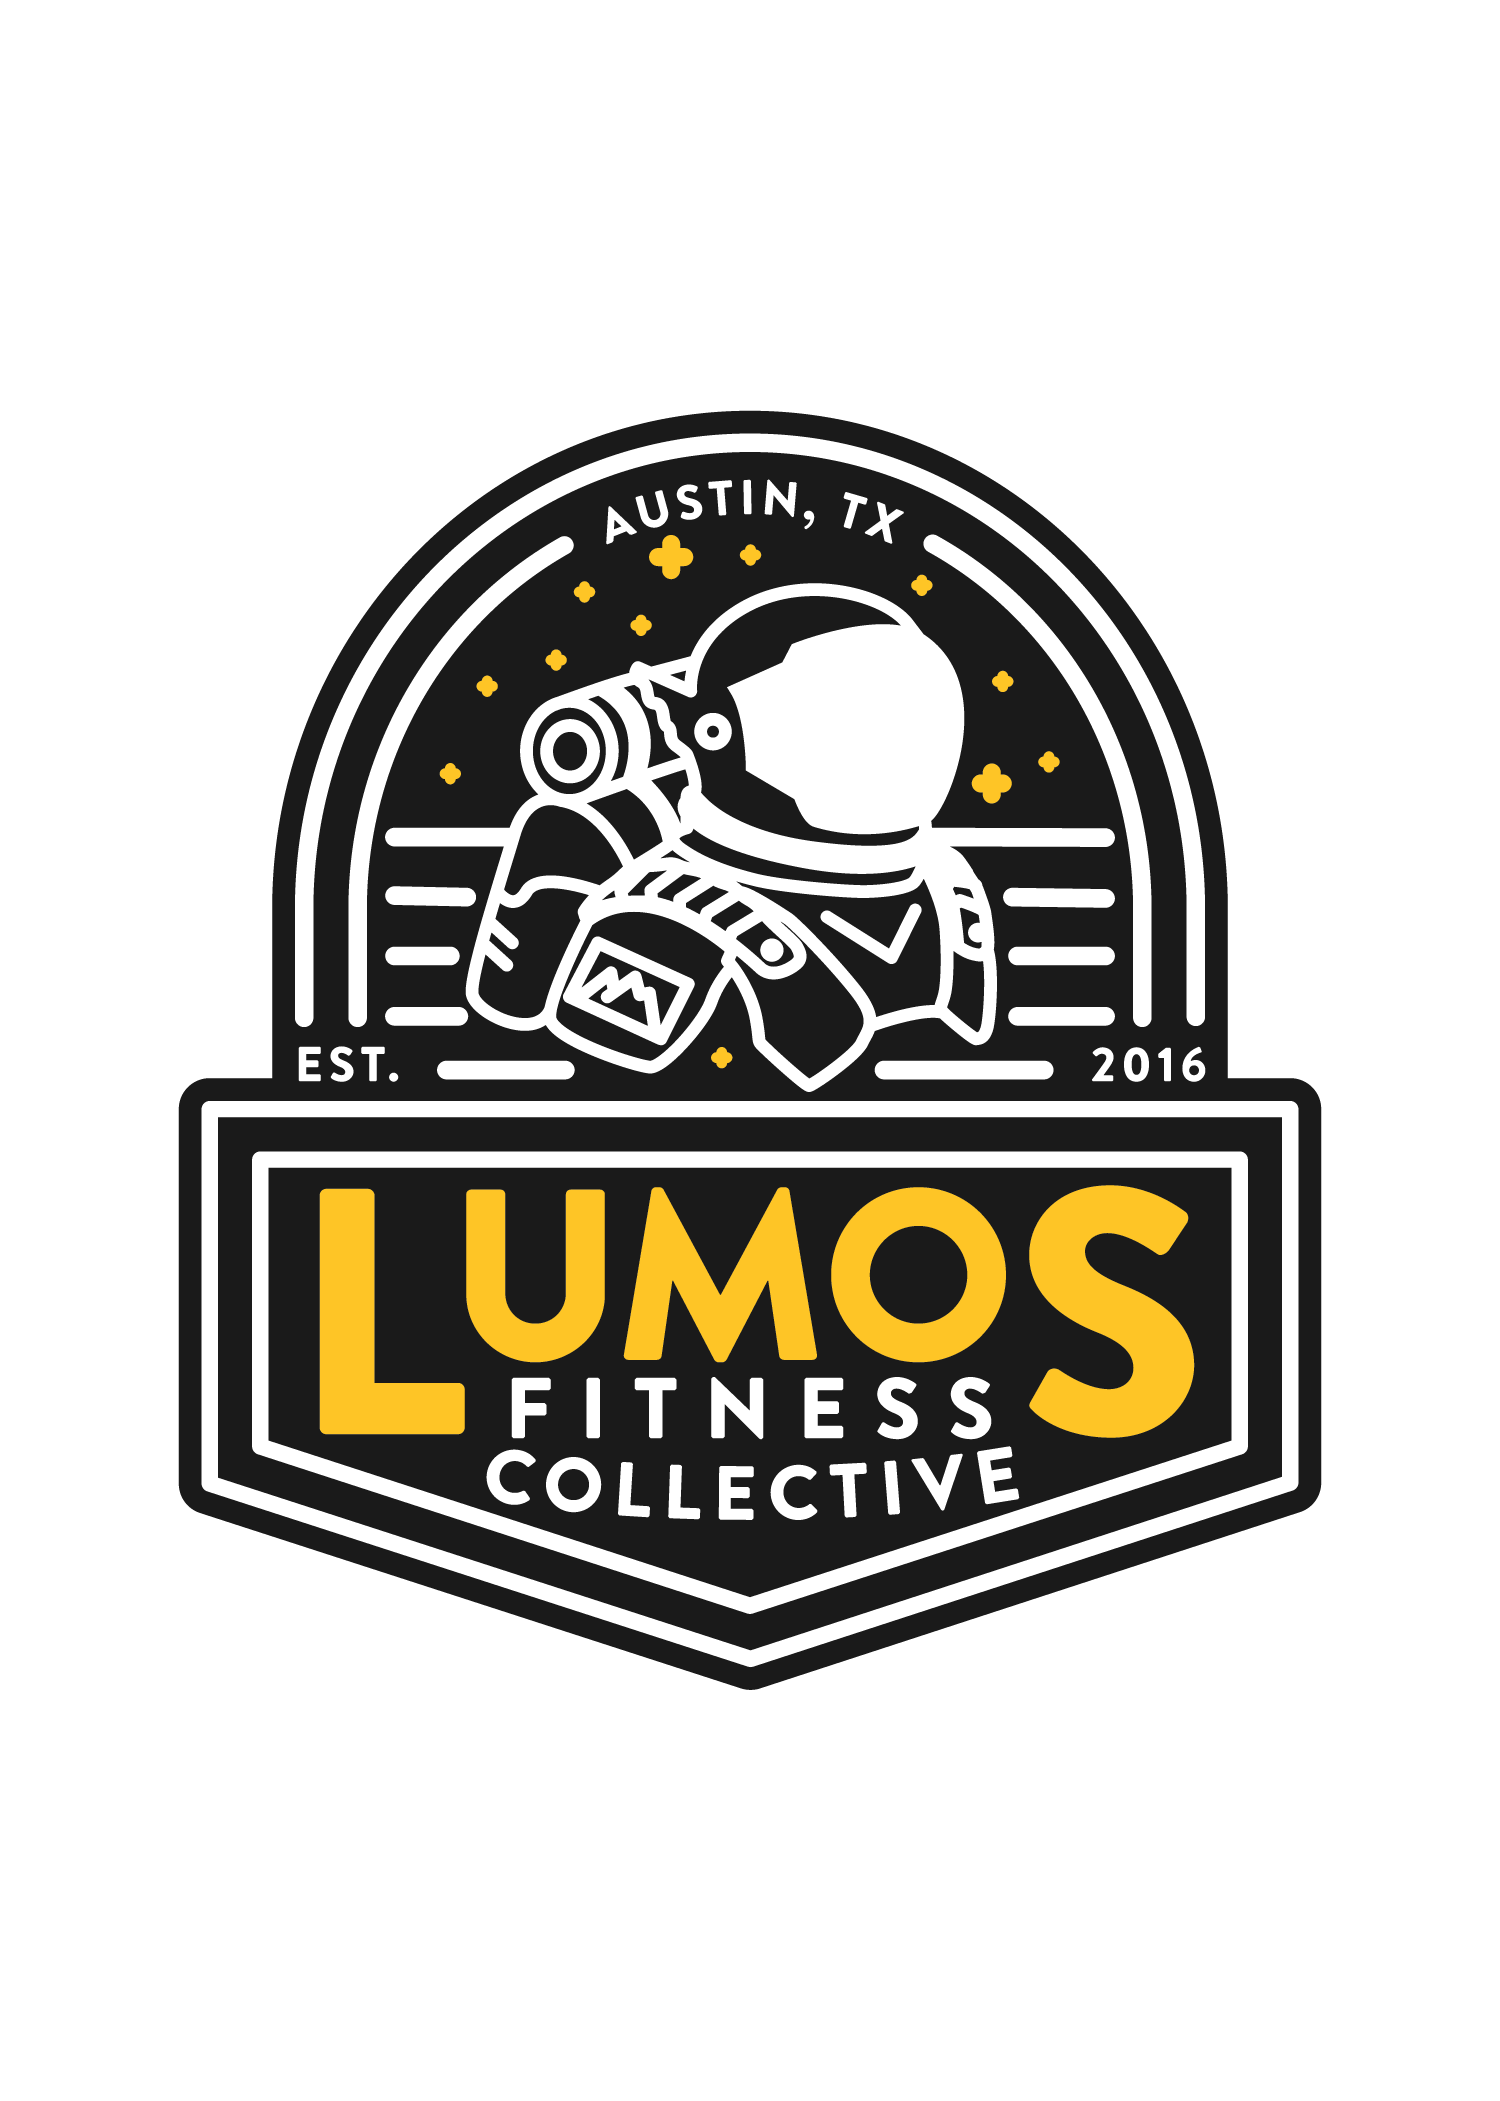 Lumos Fitness Collective logo